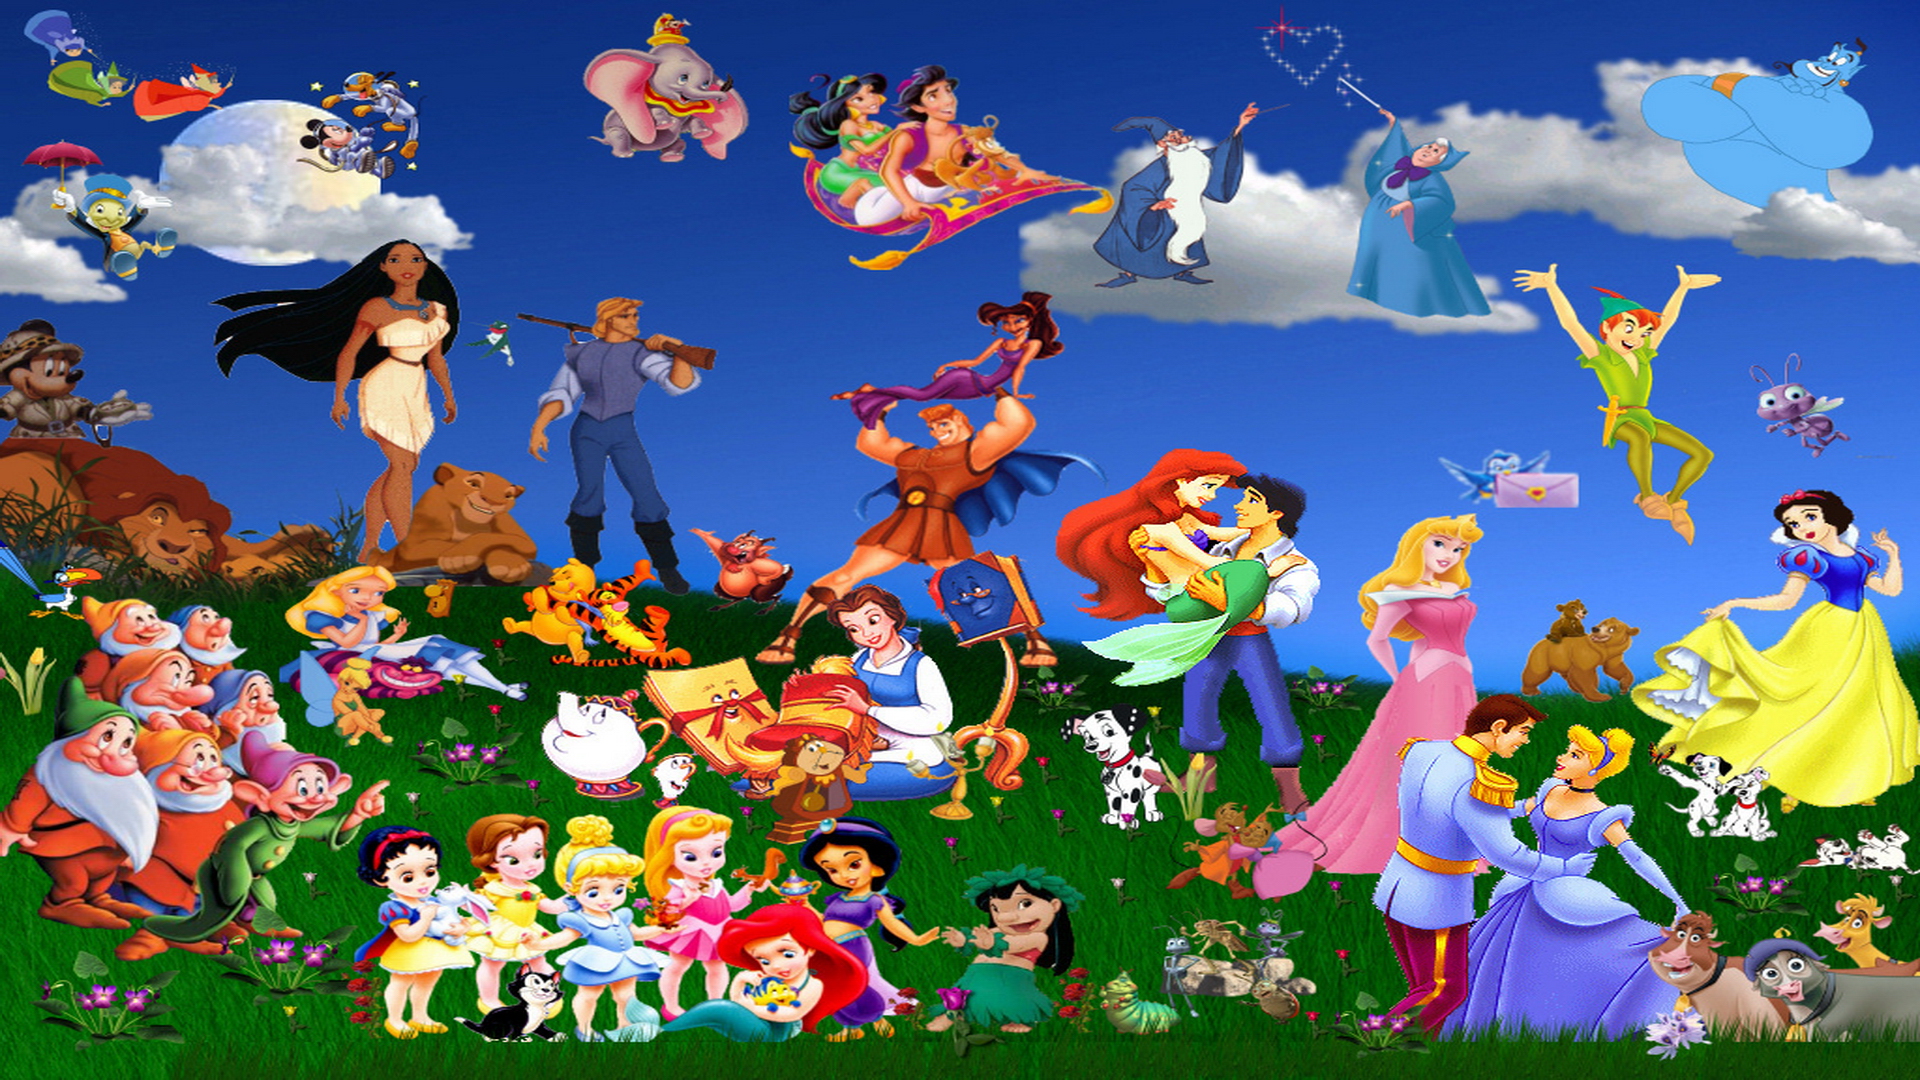 Disney Character Wallpaper Desktop - WallpaperSafari